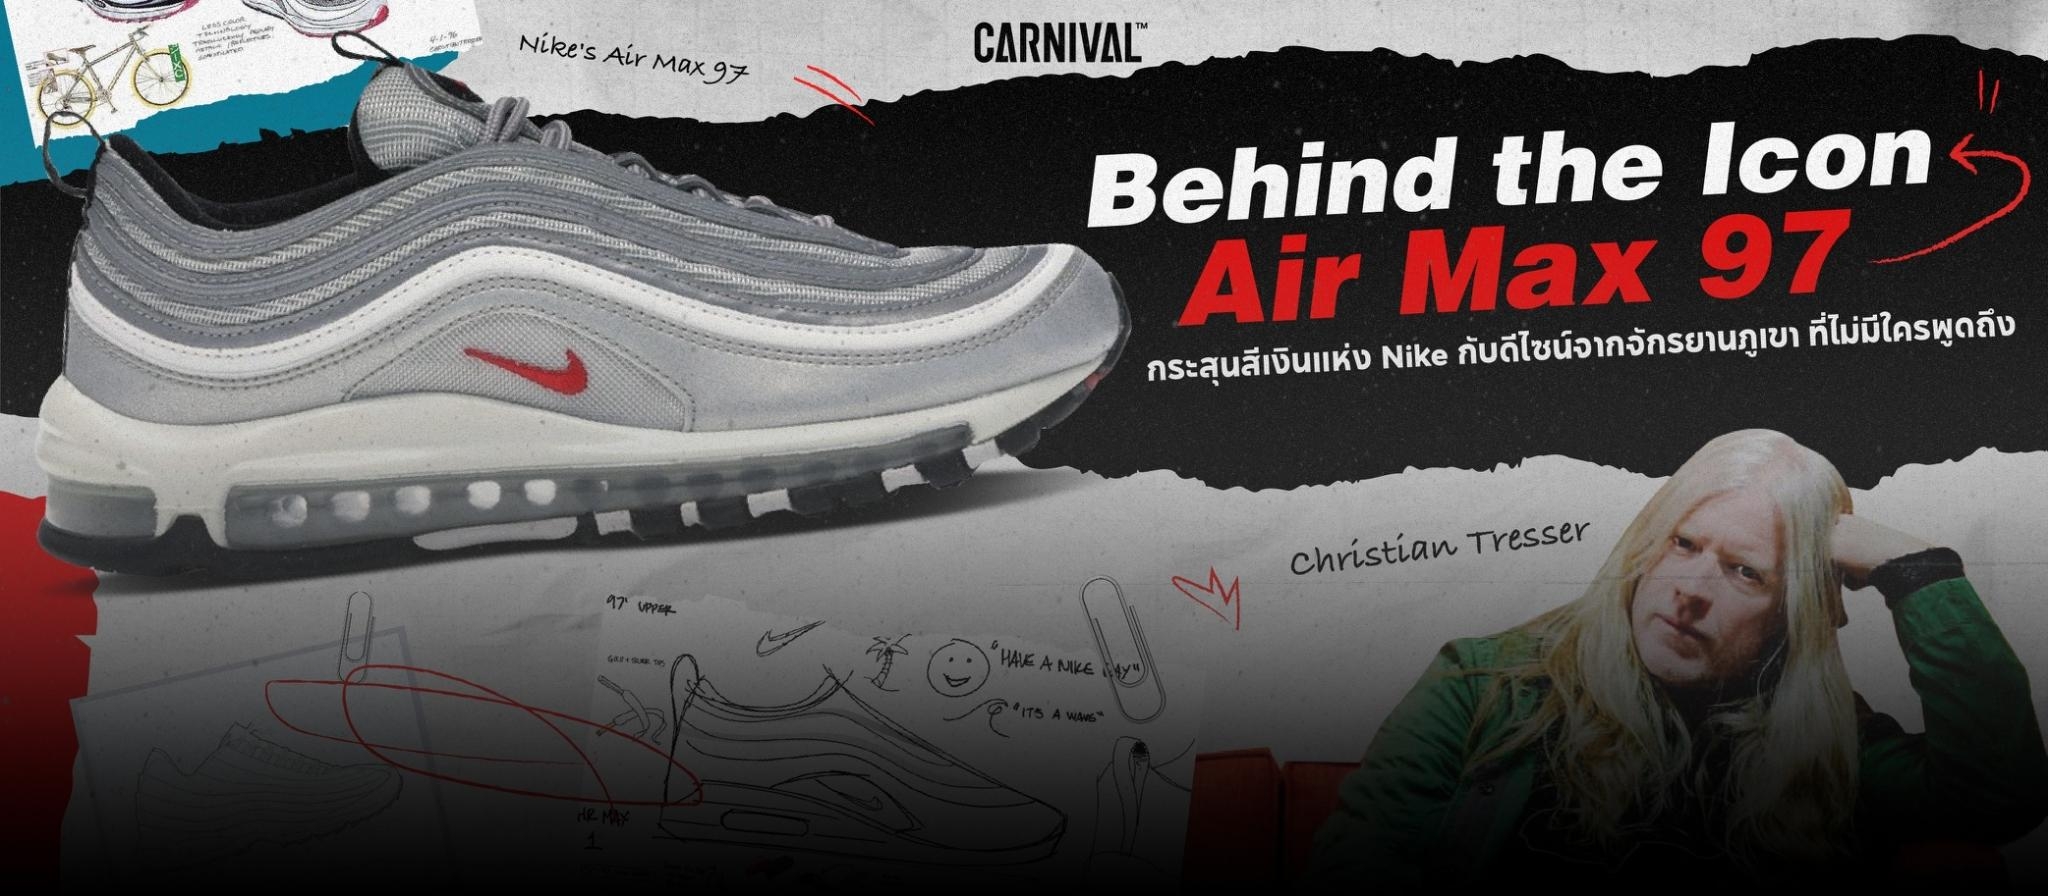 Behind the Icon | Air Max 97 “Silver Bullet” กระสุนสีเงินเเห่ง Nike กับดีไซน์จากจักรยานภูเขา ที่ไม่มีใครพูดถึง 